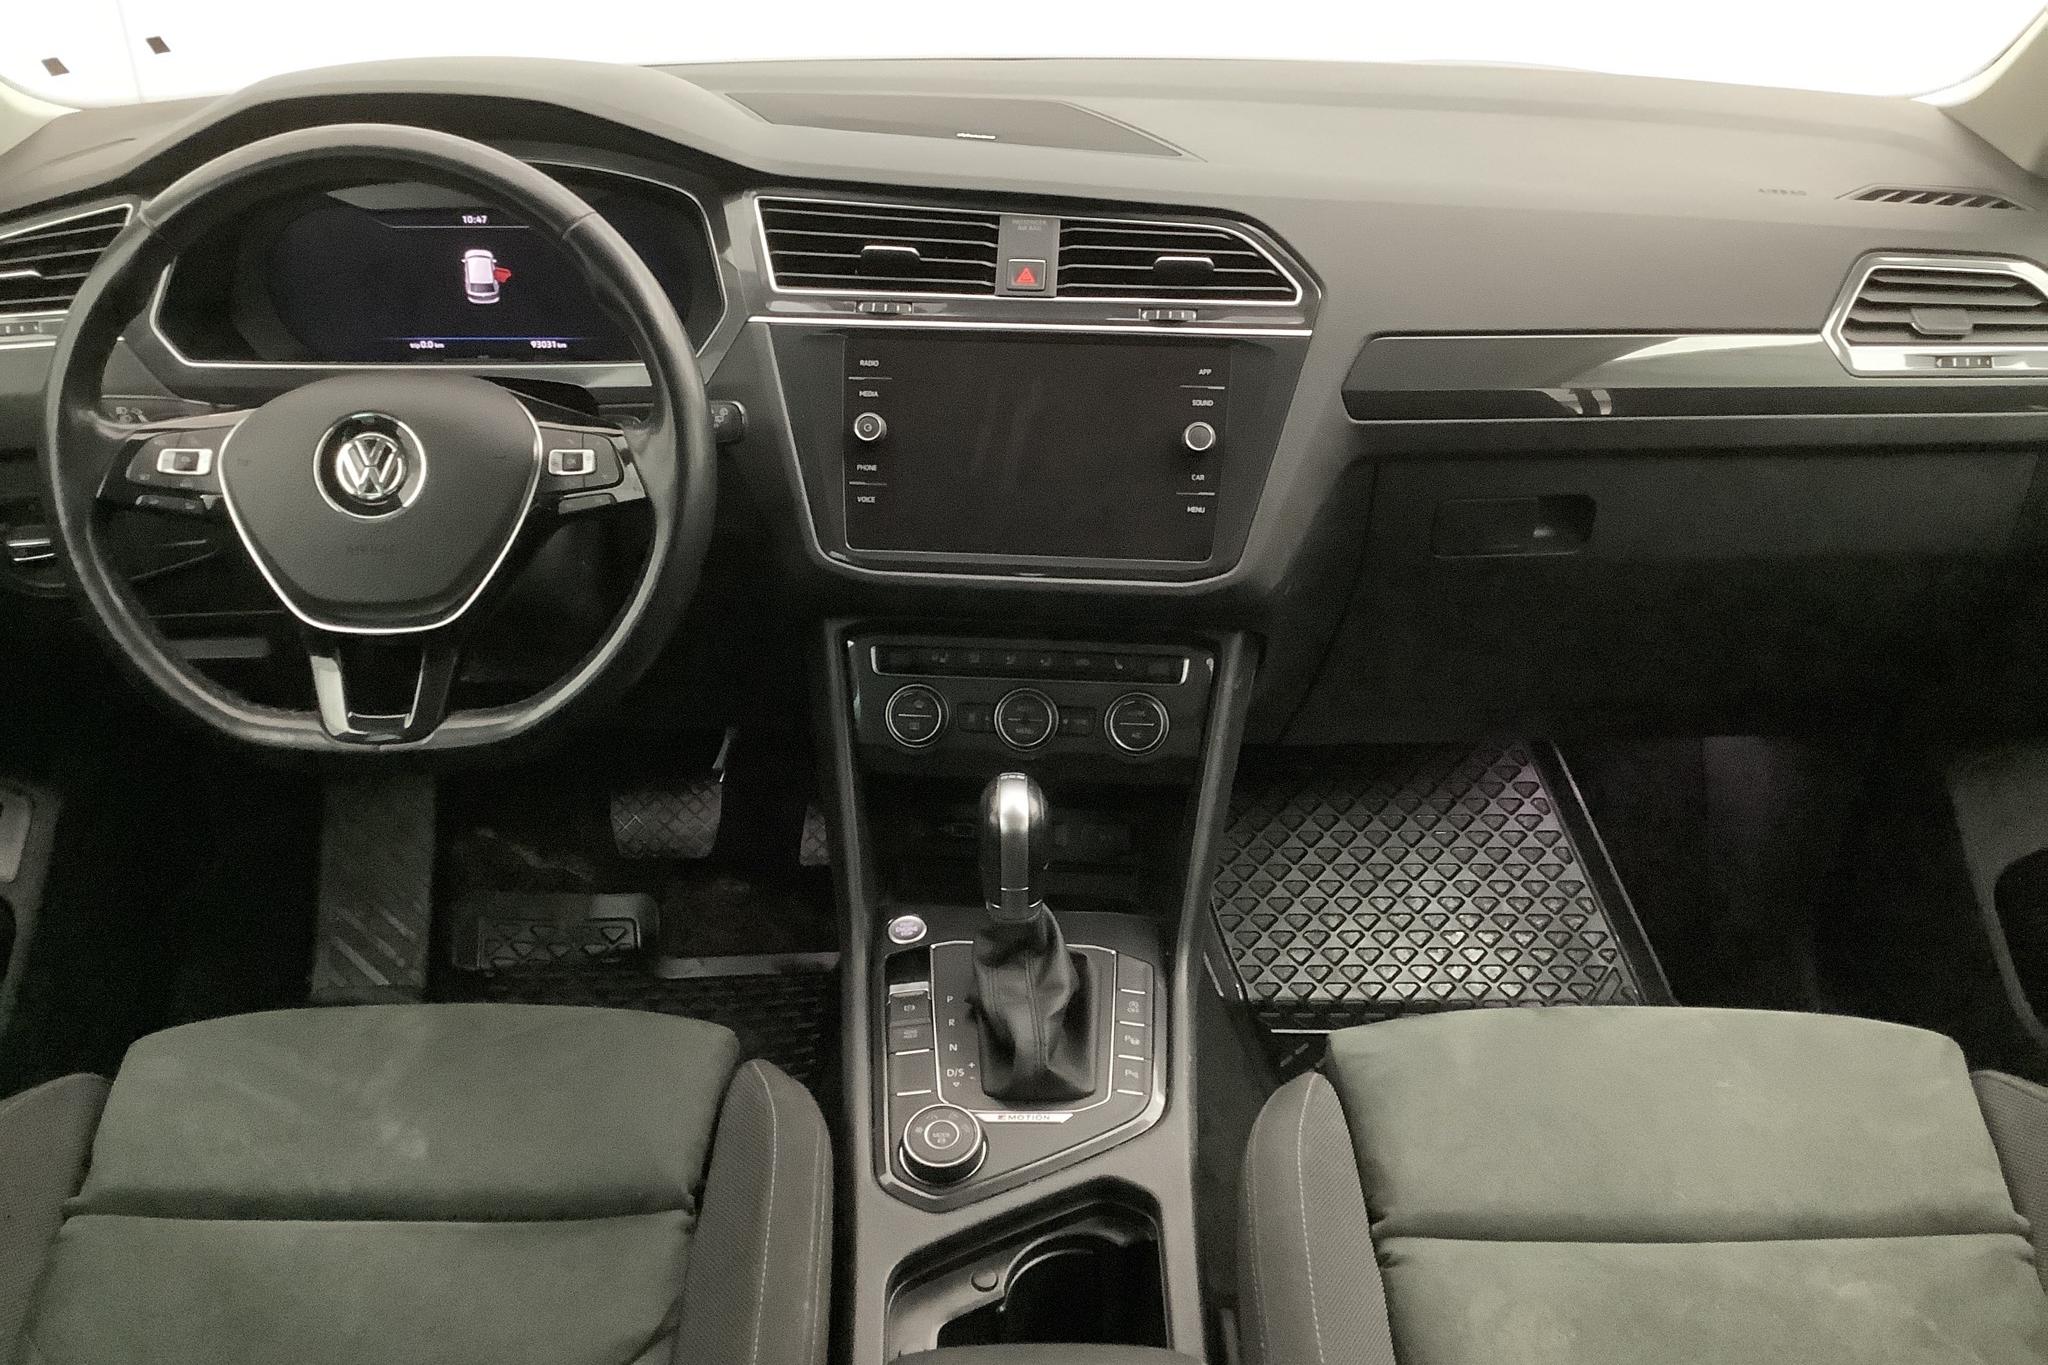 VW Tiguan 2.0 TDI 4MOTION (190hk) - 93 030 km - Automatic - silver - 2018